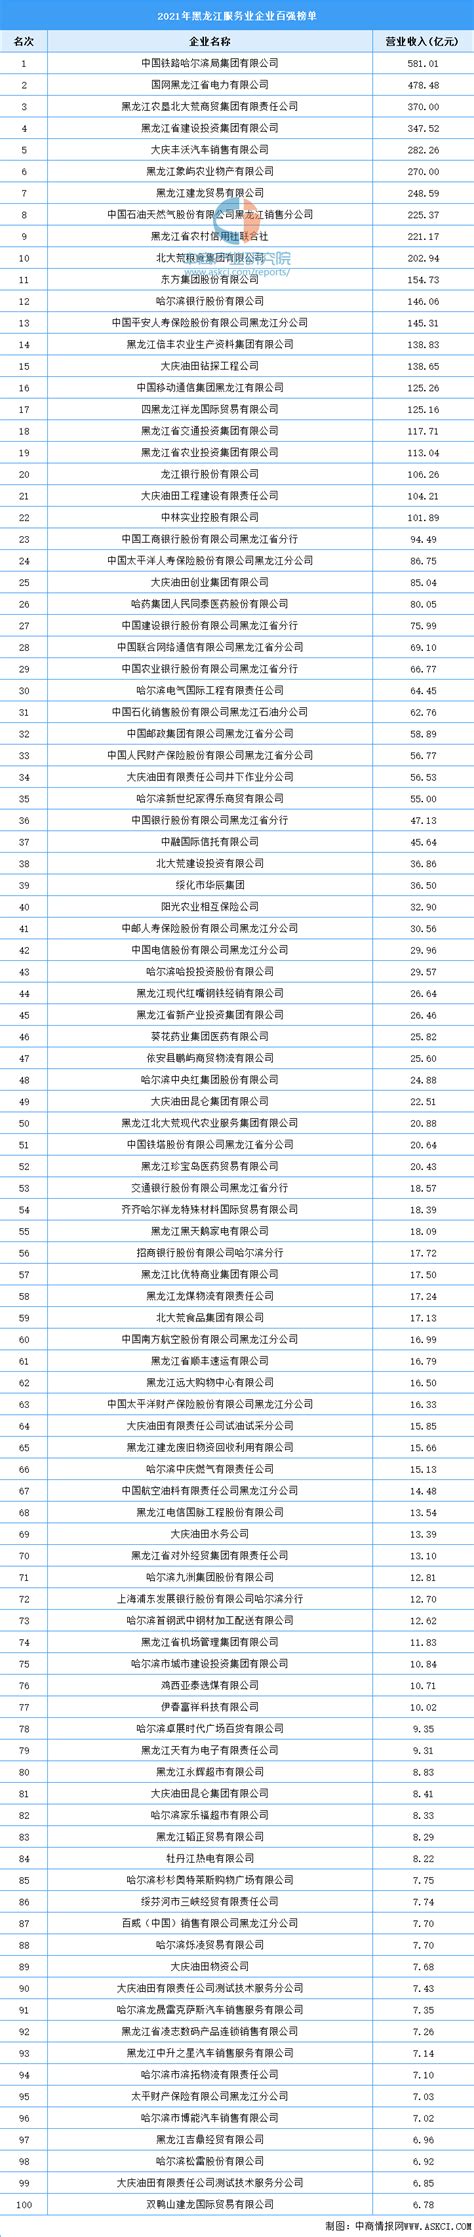 2021年8月黑龙江省销售商品房141.09万平方米 销售均价约为0.61万元/平方米_智研咨询